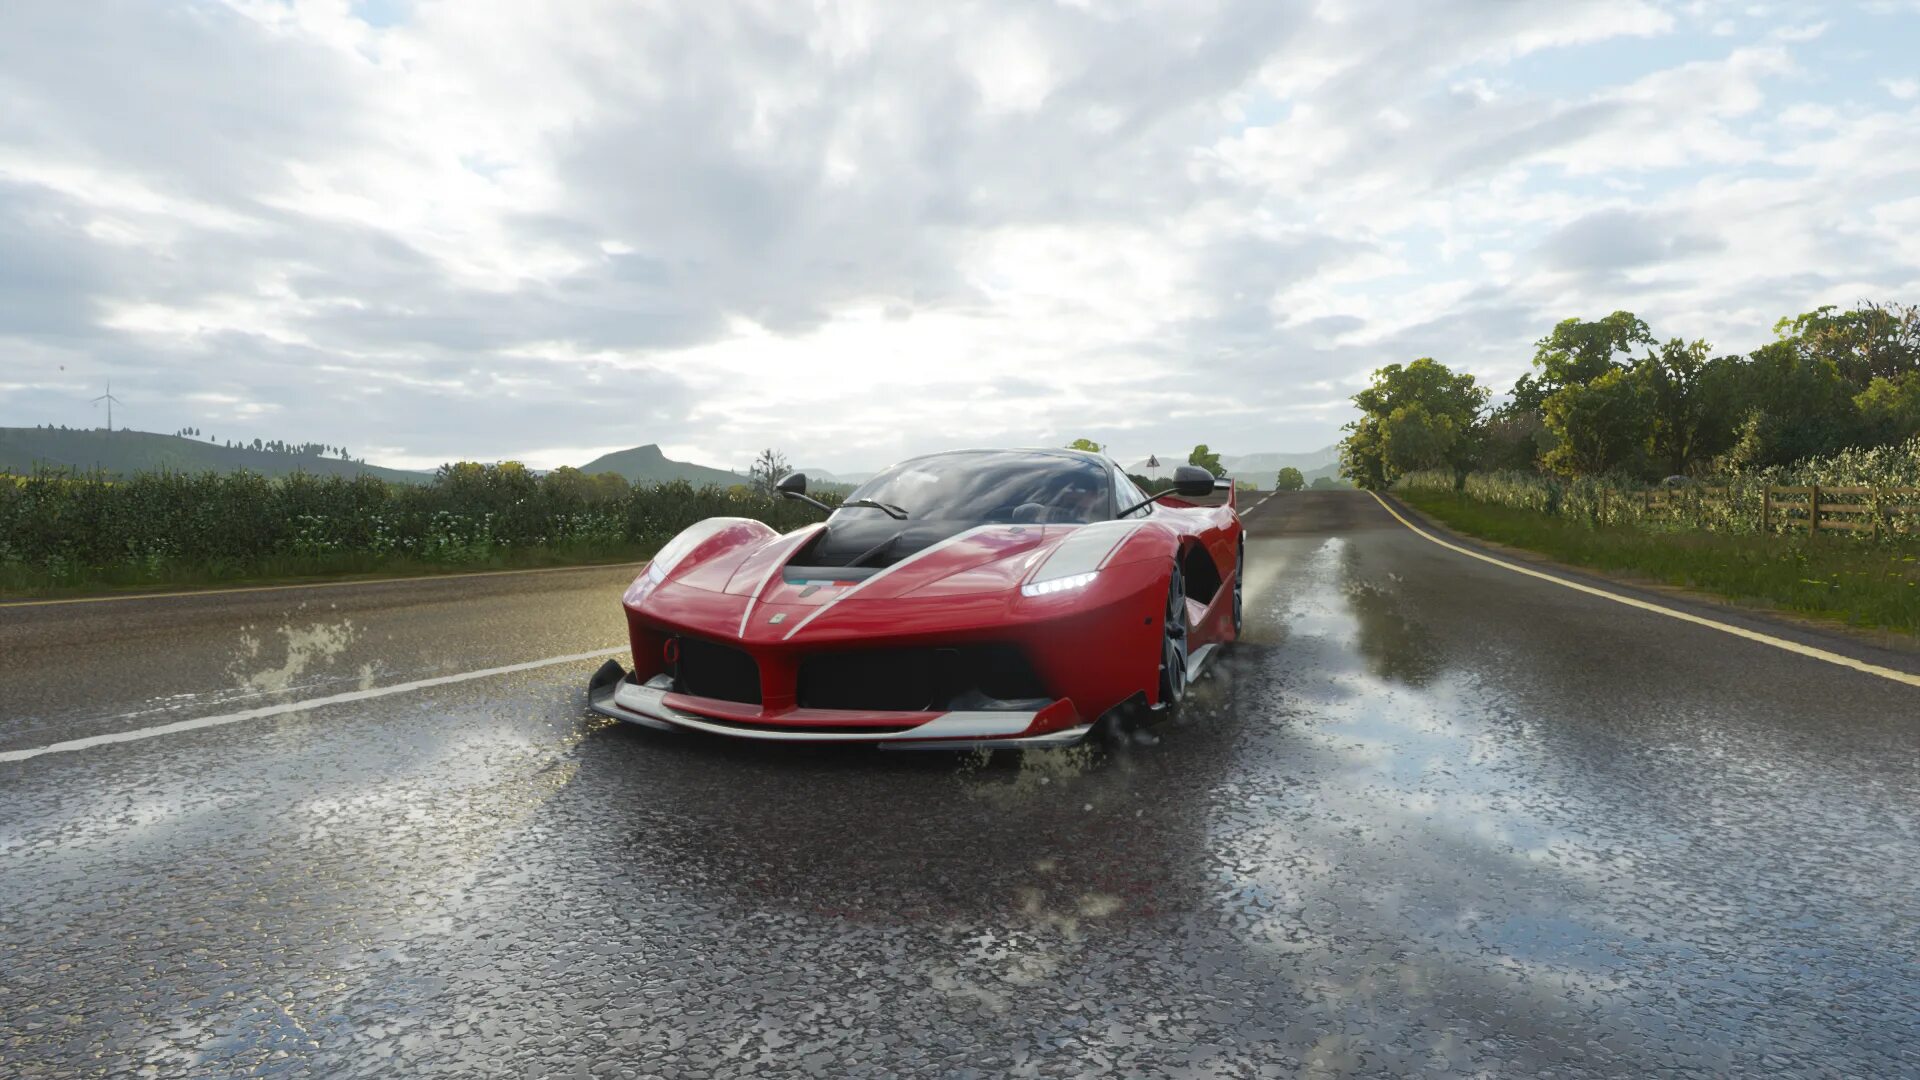 Forza horizon 4 ferrari. 2014 Ferrari FXX K. Ferrari FXX Evolution Forza Horizon 4. Ferrari FXX K Forza Horizon 5.